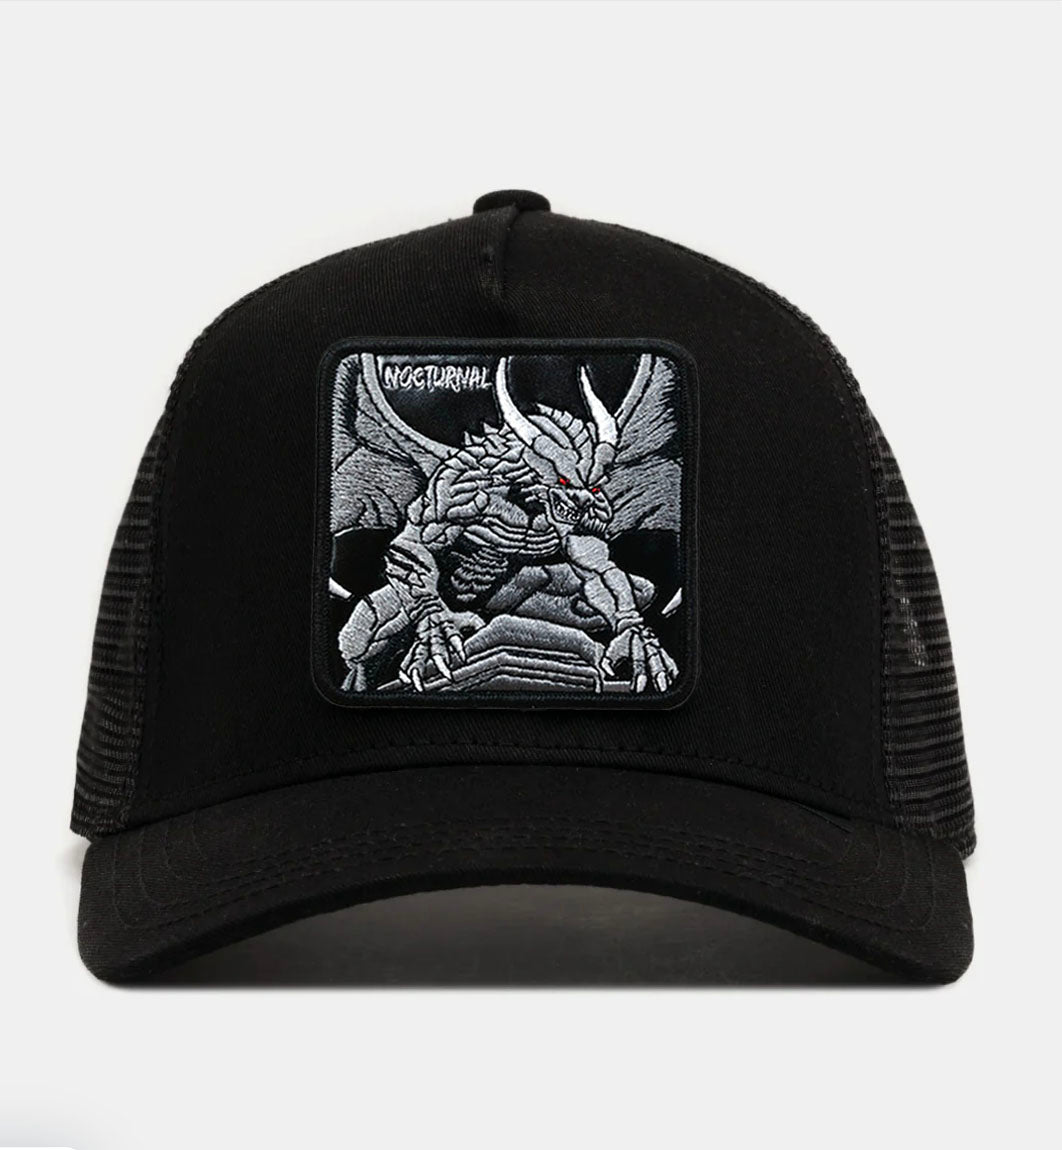 Gargoyle - "Nocturnal" Trucker Hat